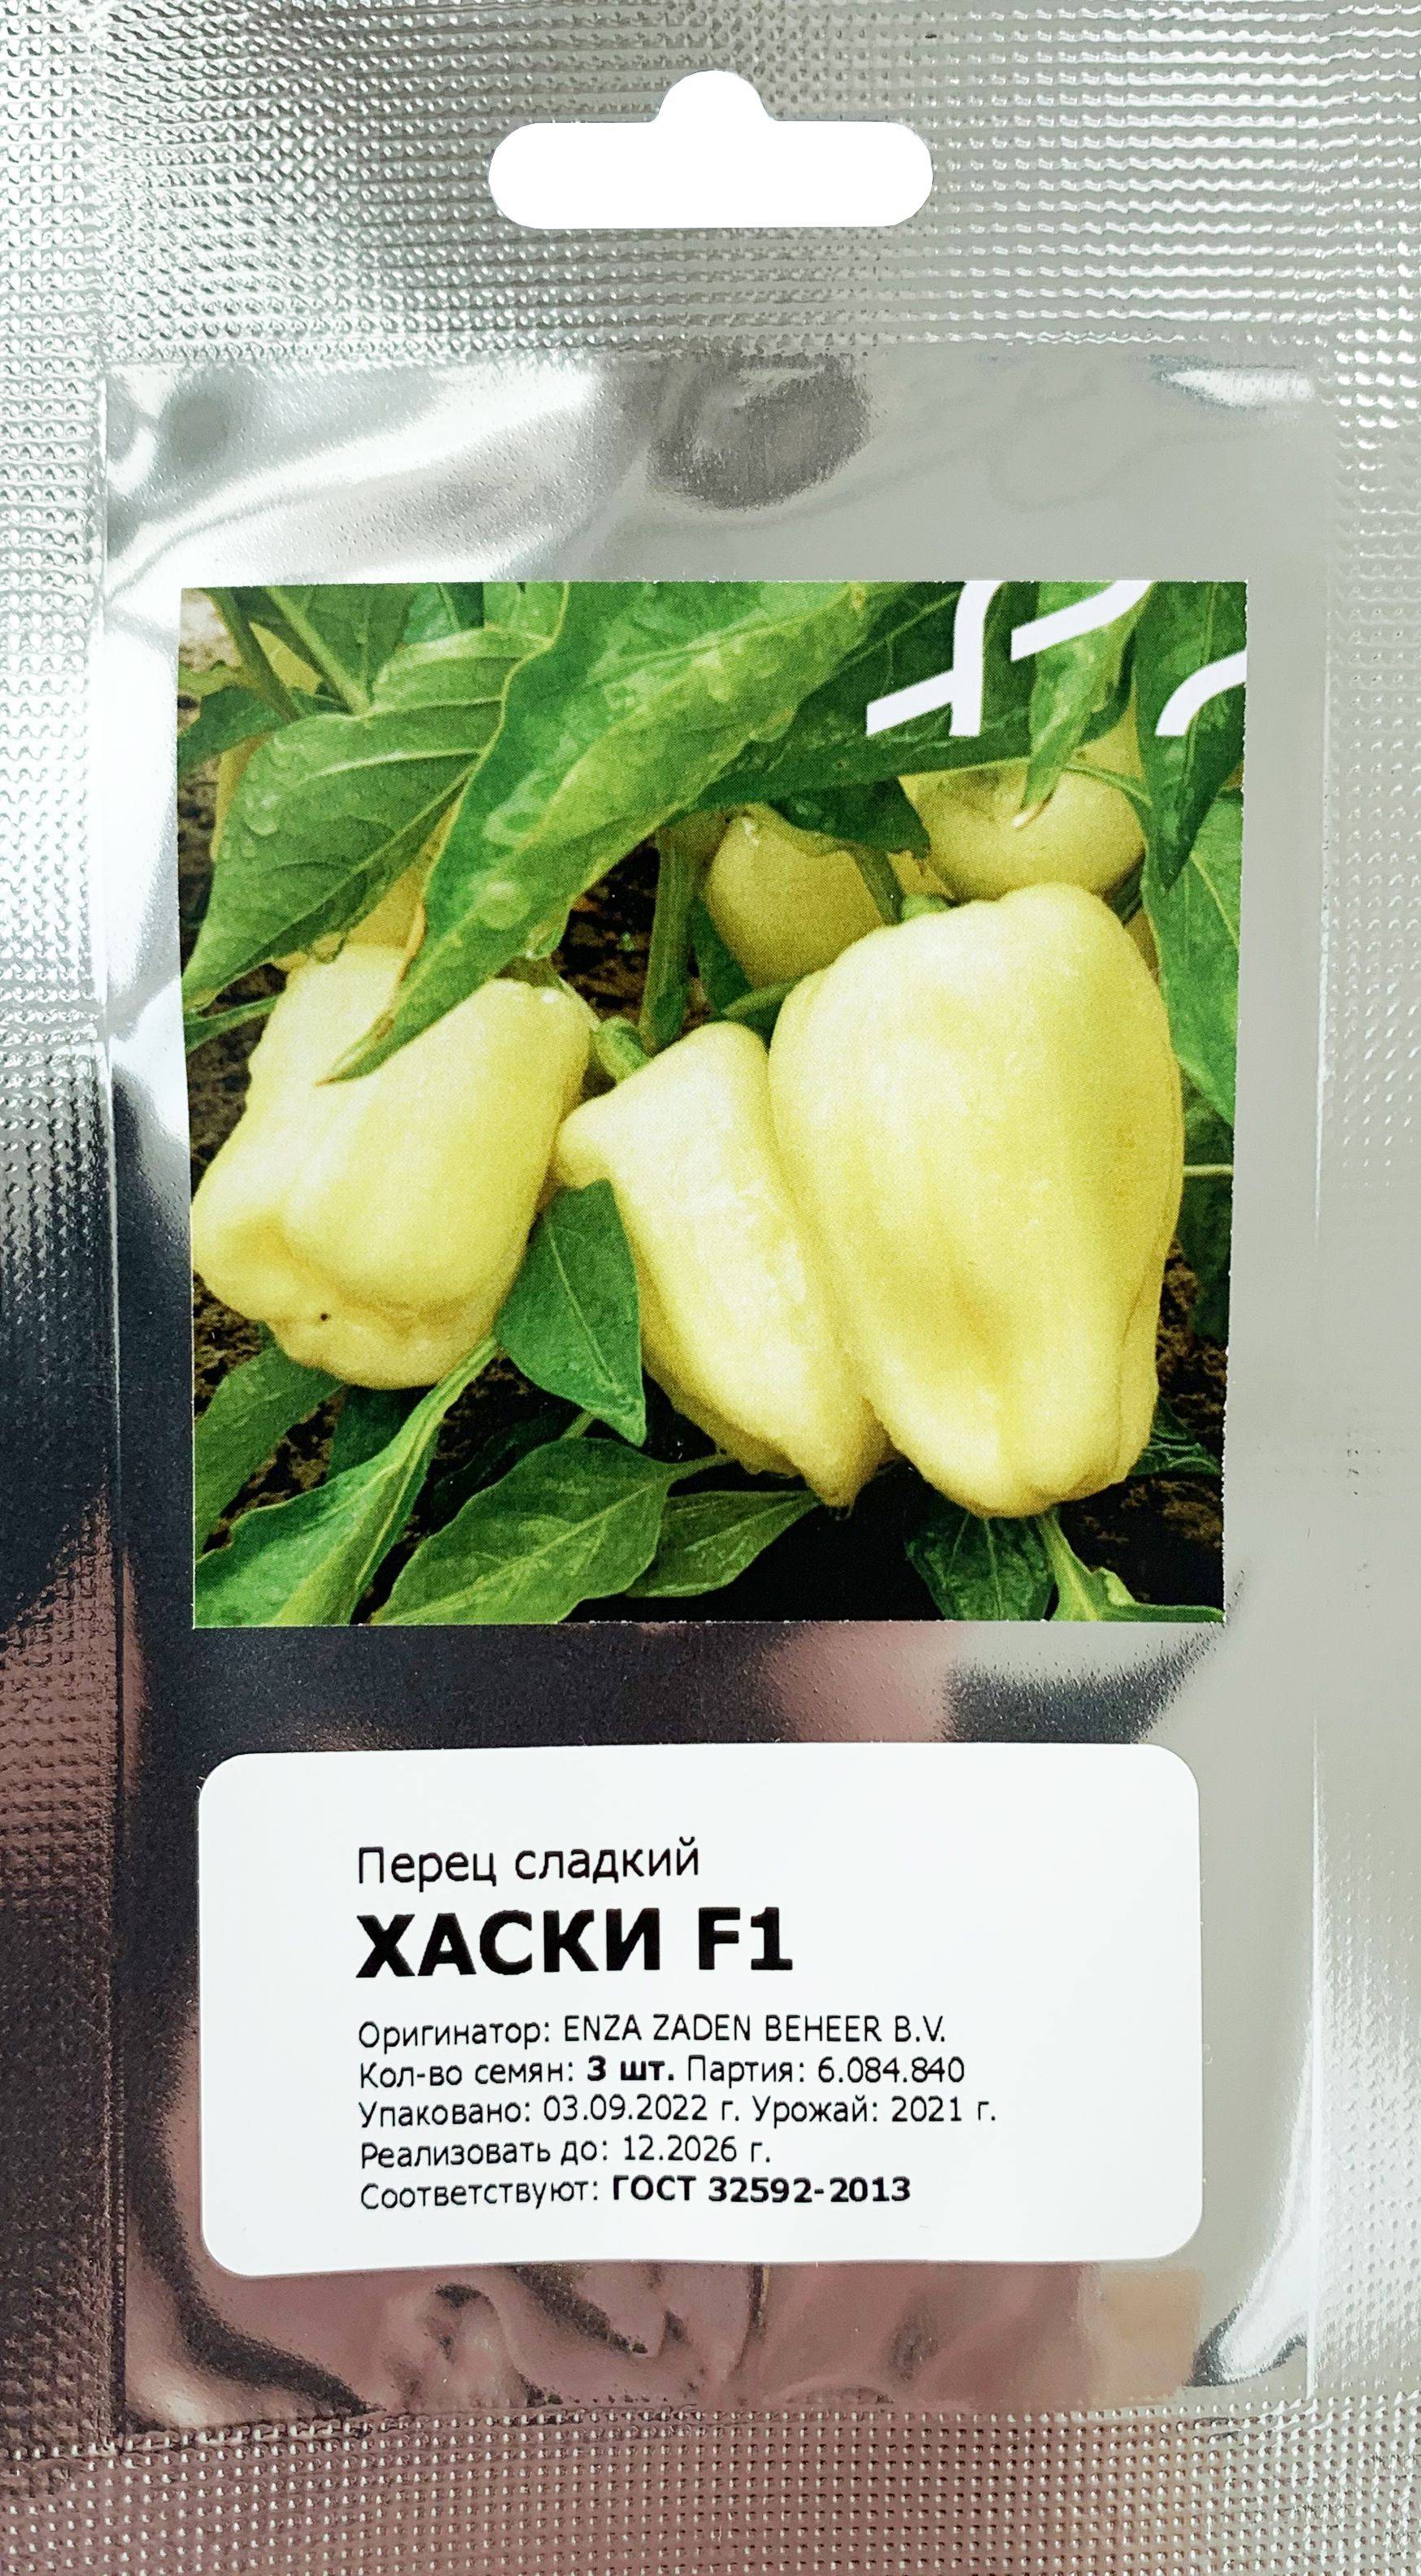 Характеристика салатного перца хаски ф1